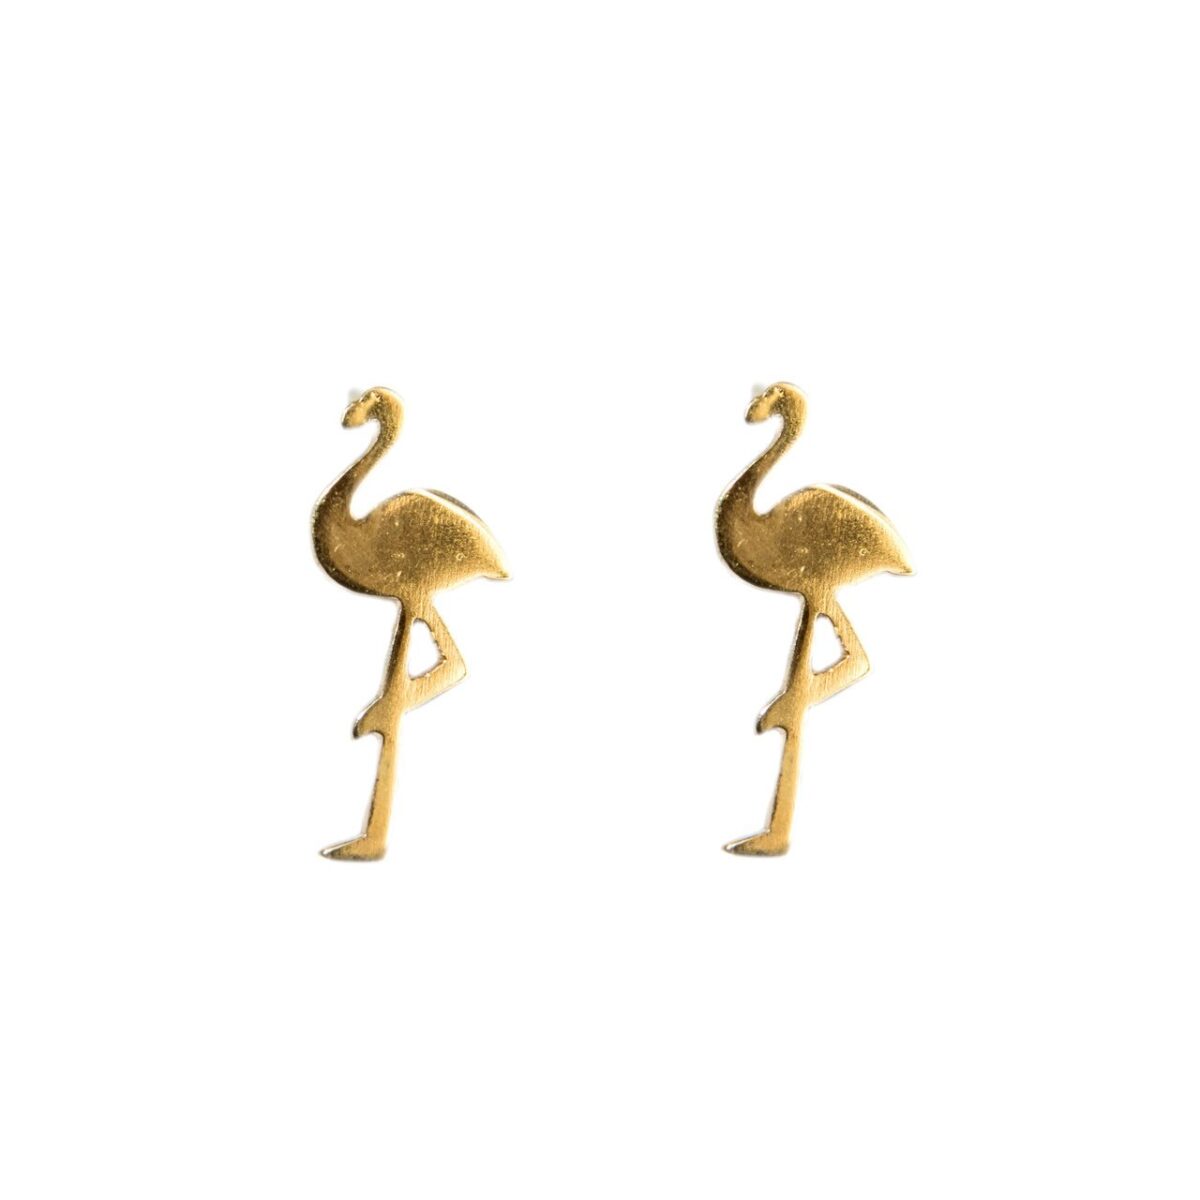 Flamingo II earrings Flamingo II earrings Flamingo II earrings 5